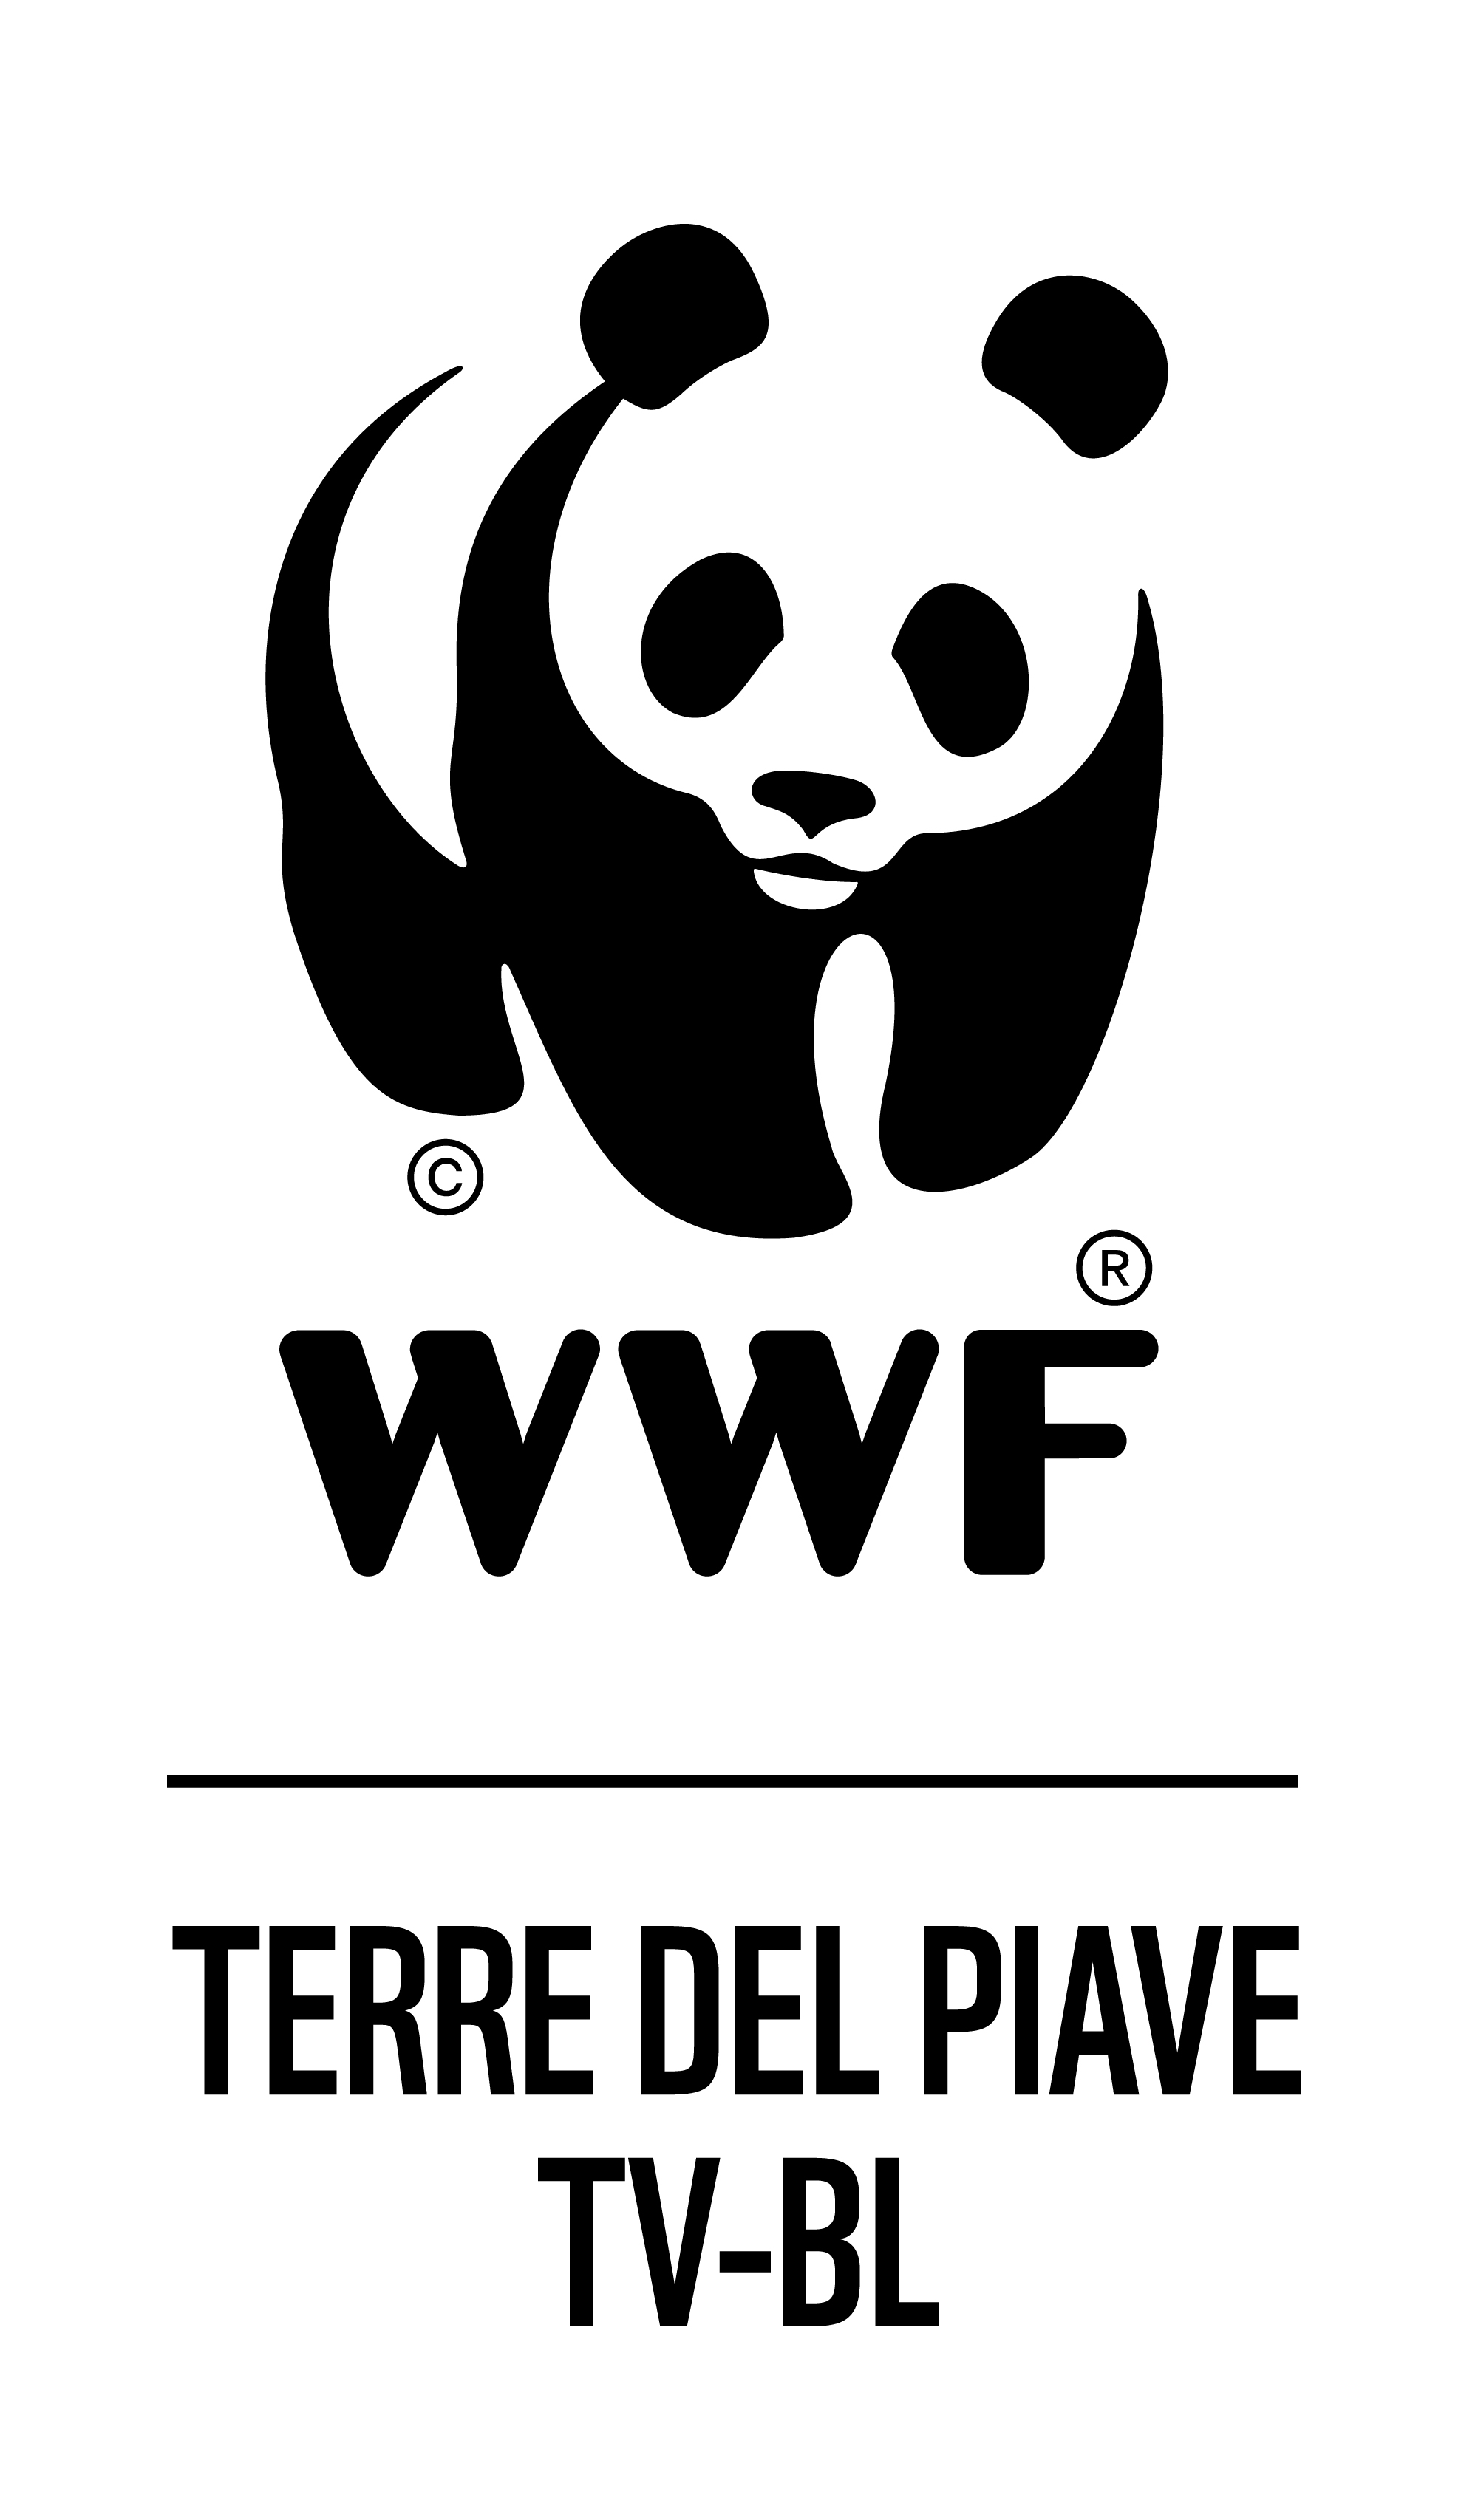 logo-wwf-terre-del-piave